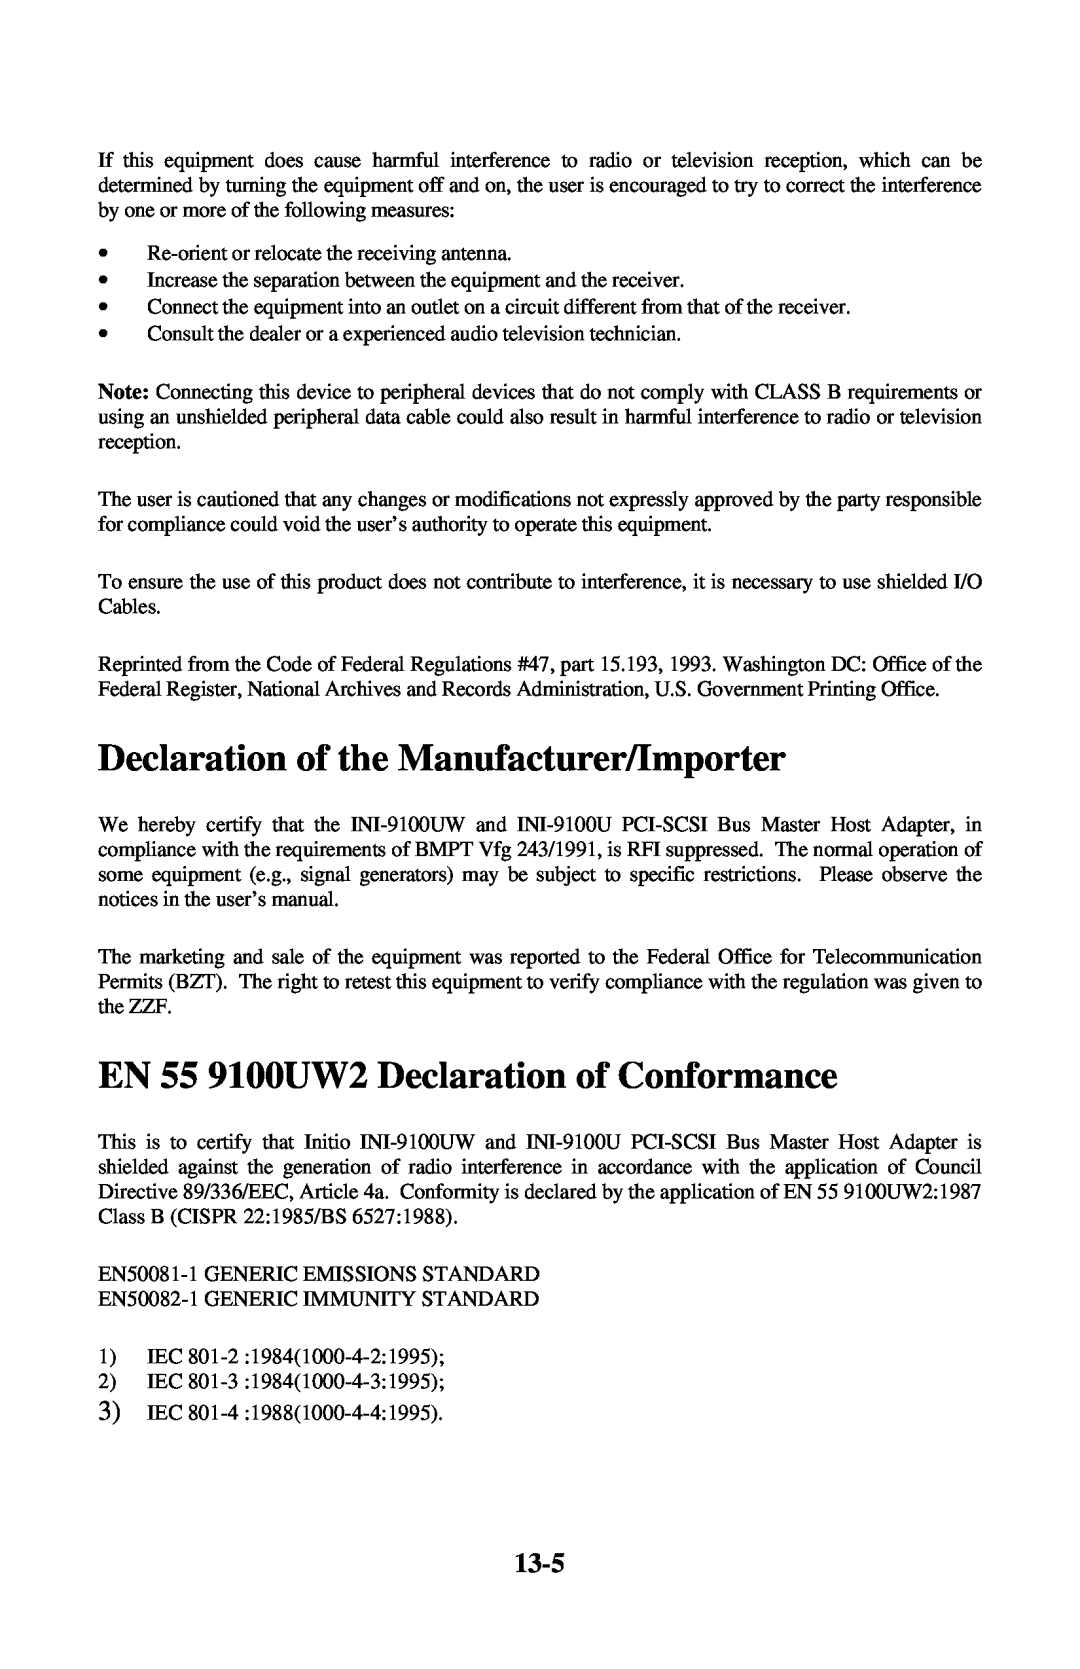 Initio INI-9100UW user manual Declaration of the Manufacturer/Importer, EN 55 9100UW2 Declaration of Conformance, 13-5 